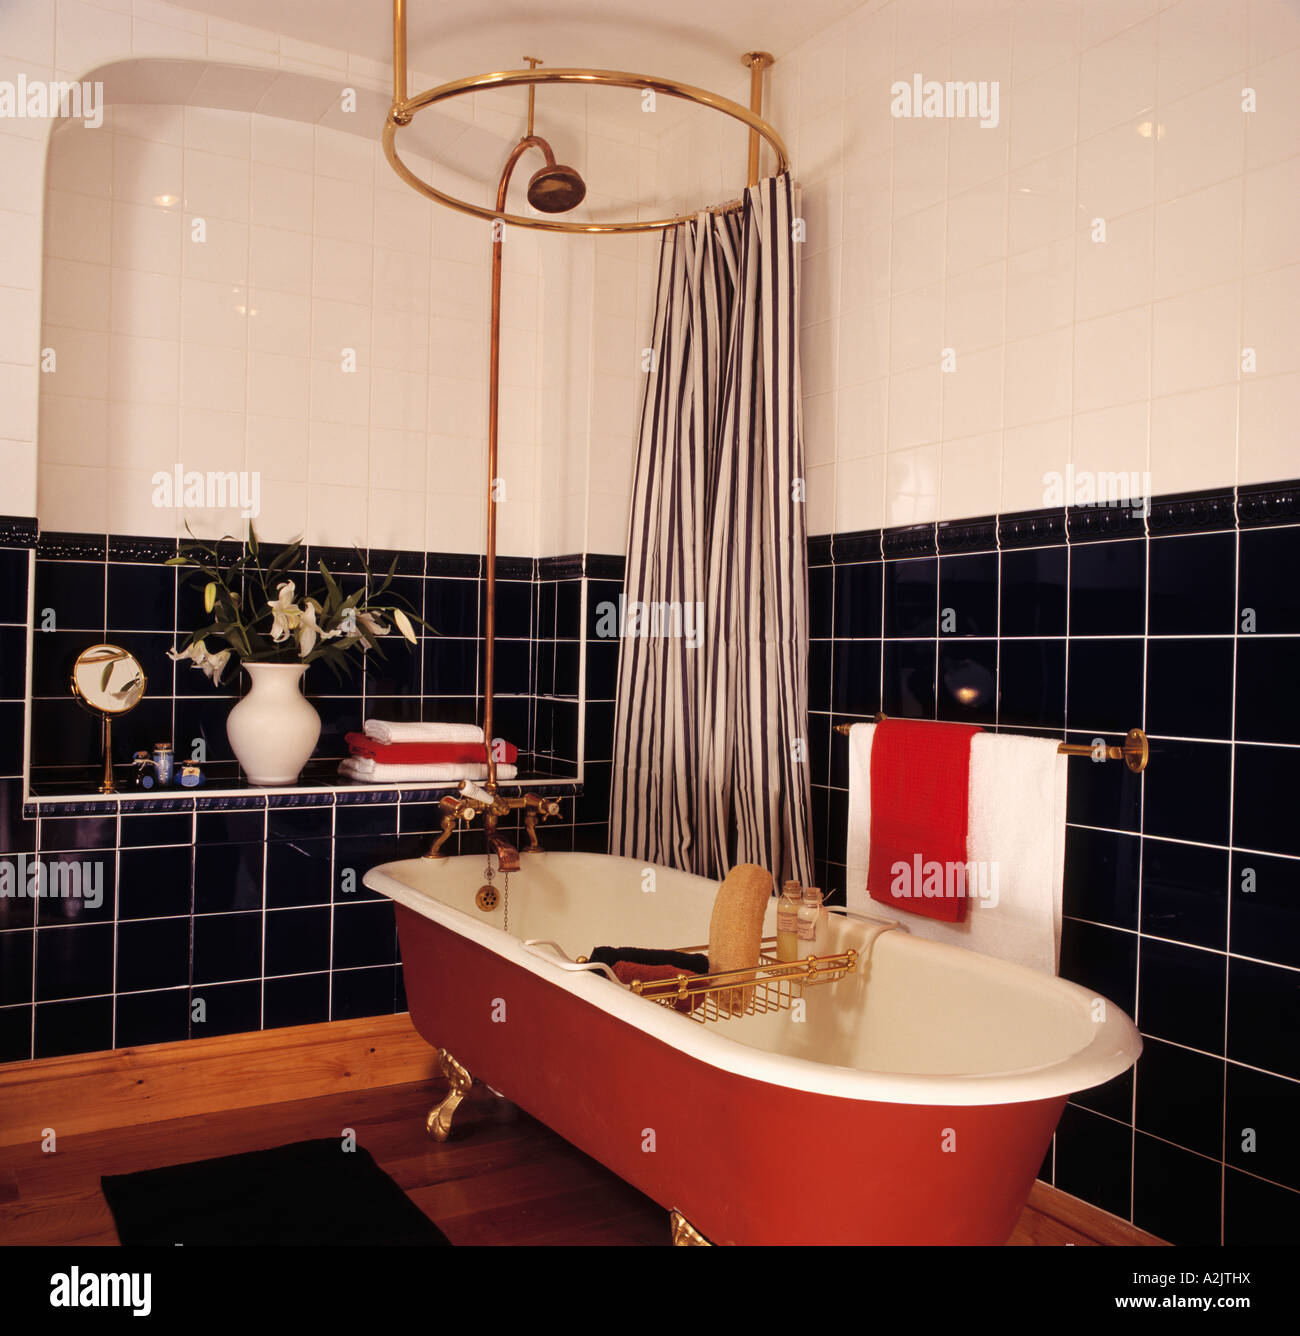 Gestreiften Duschvorhang auf kreisförmigen Schiene oben rot freistehende  Badewanne in schwarz / weiß Bad Stockfotografie - Alamy